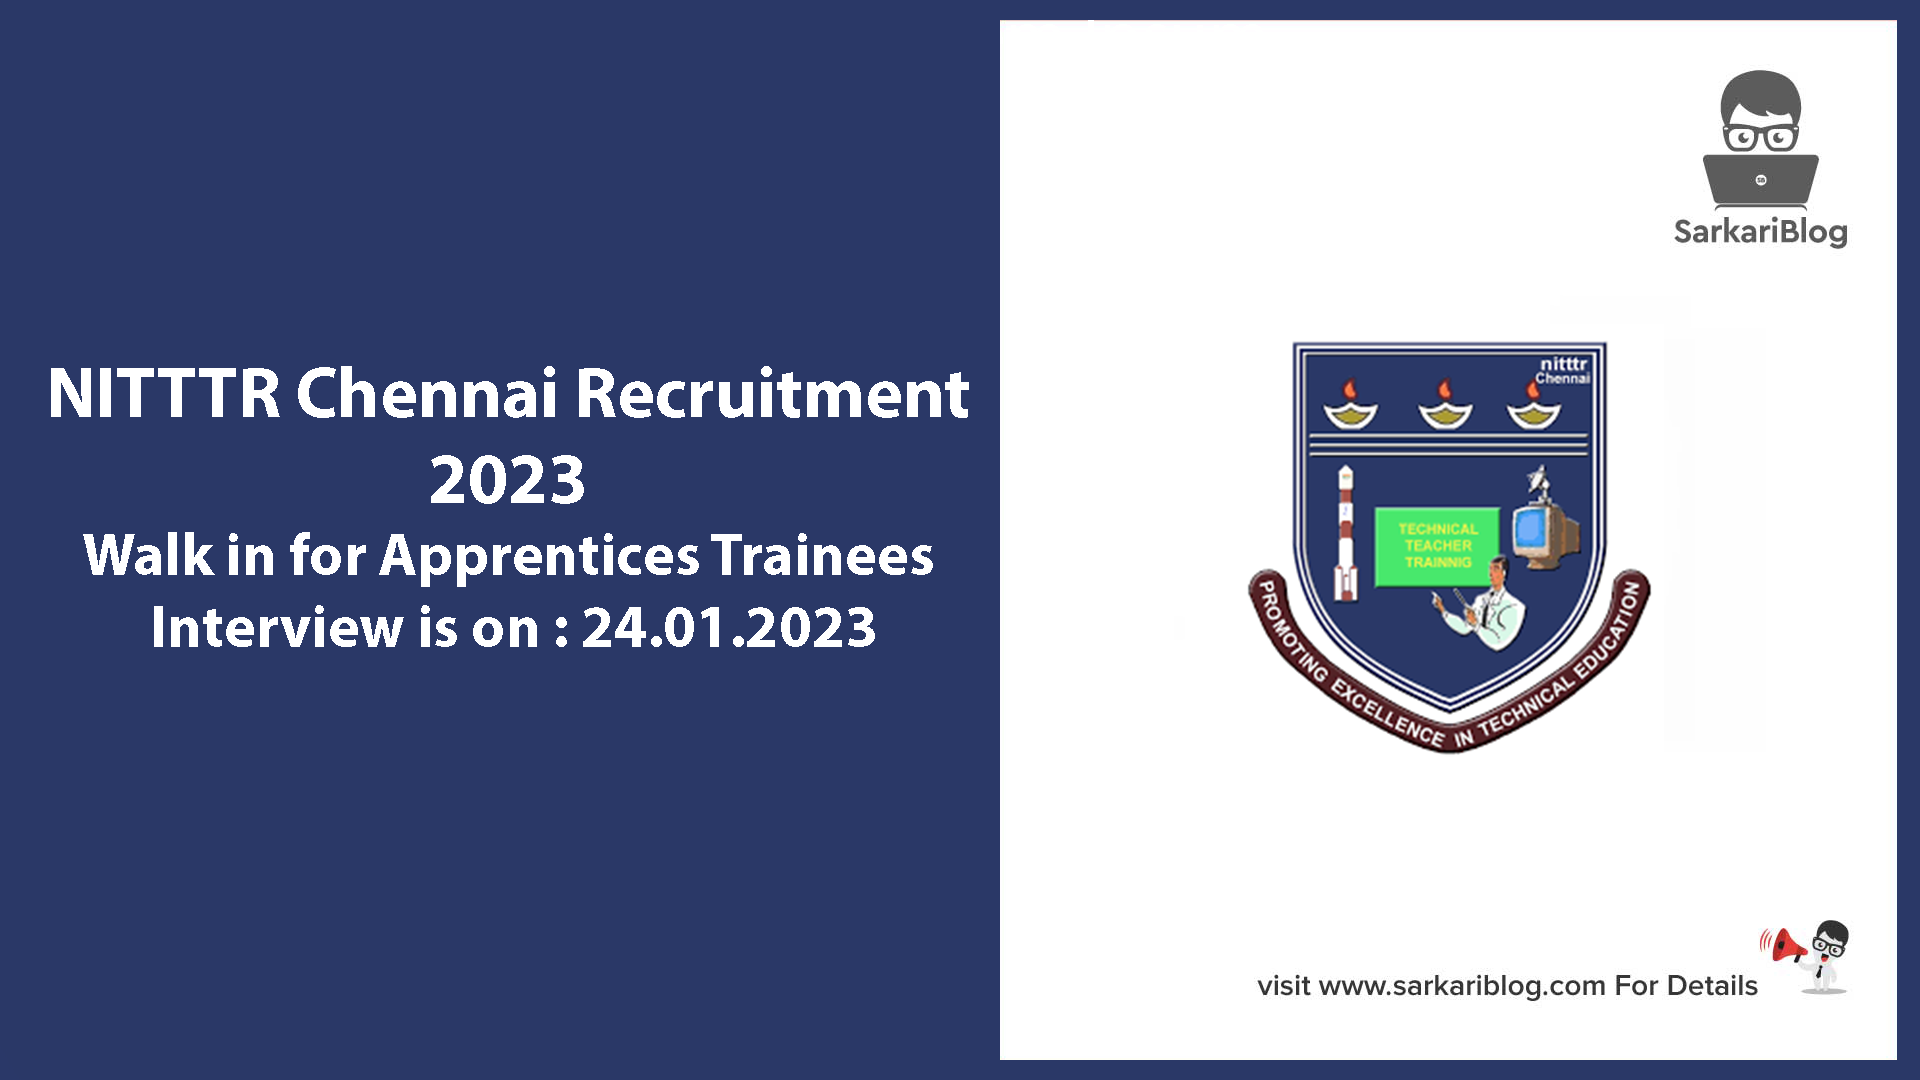 NITTTR Chennai Recruitment 2023